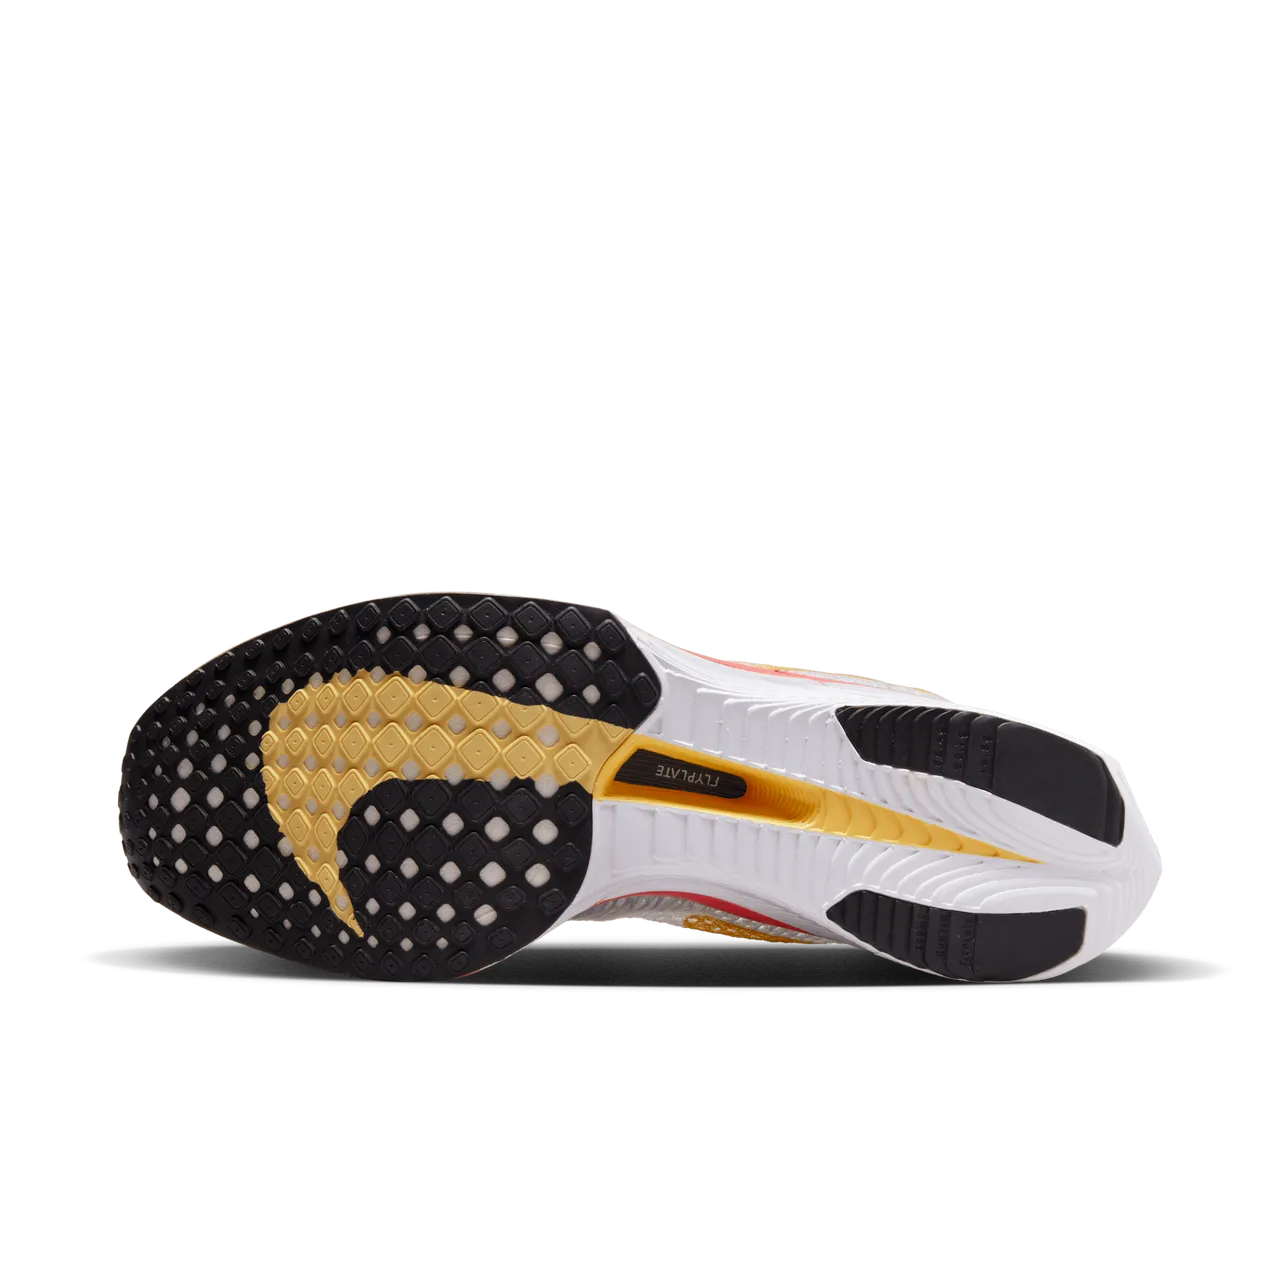 Nike Vaporfly 3 Damen-Straßenlaufschuh für Wettkämpfe - Weiß